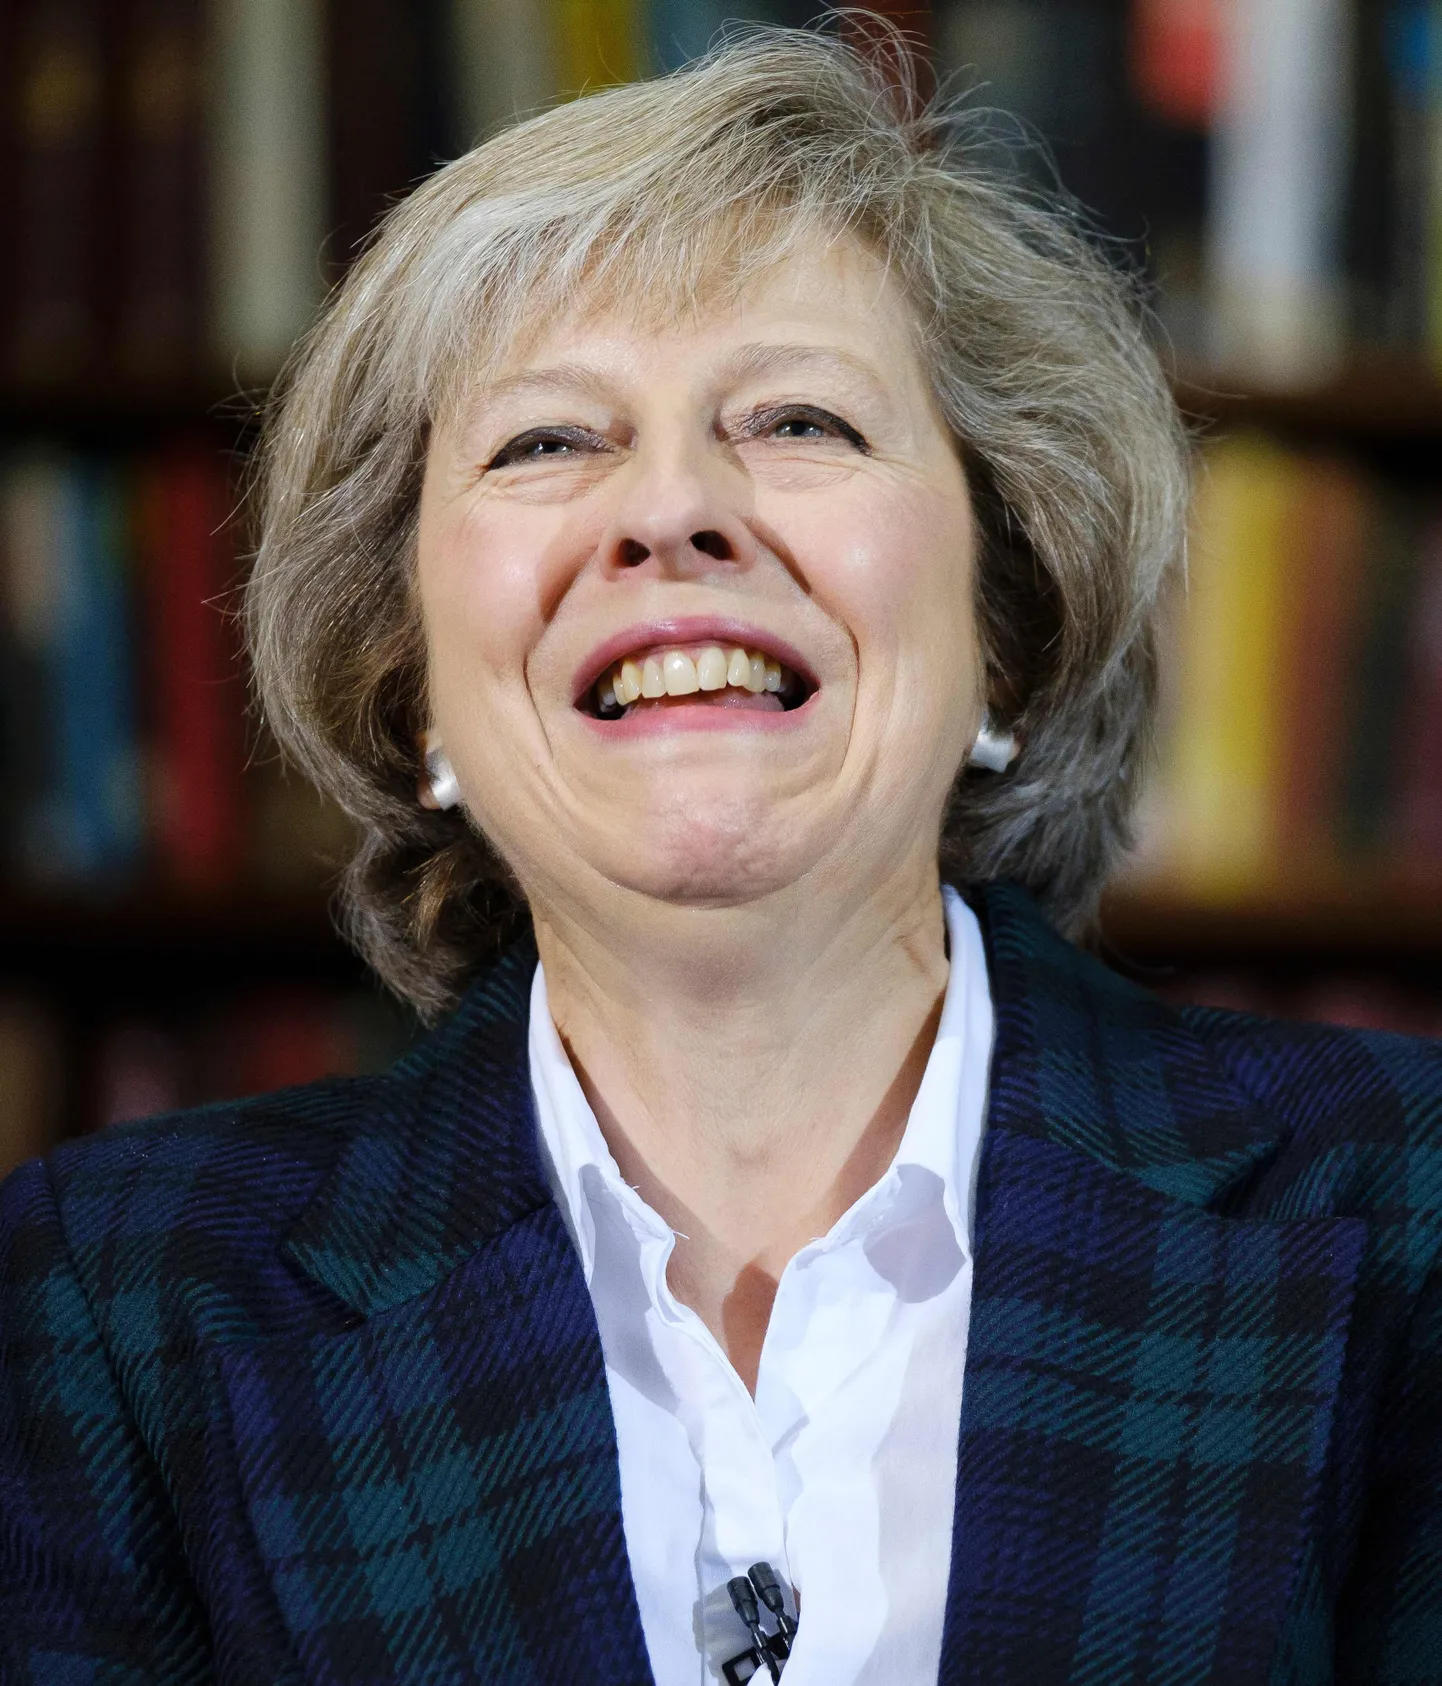 Pikaaegne ministriroll pole Theresa May vitaalsust närvutanud. Tõenäoliselt saab temast järgmine peaminister.